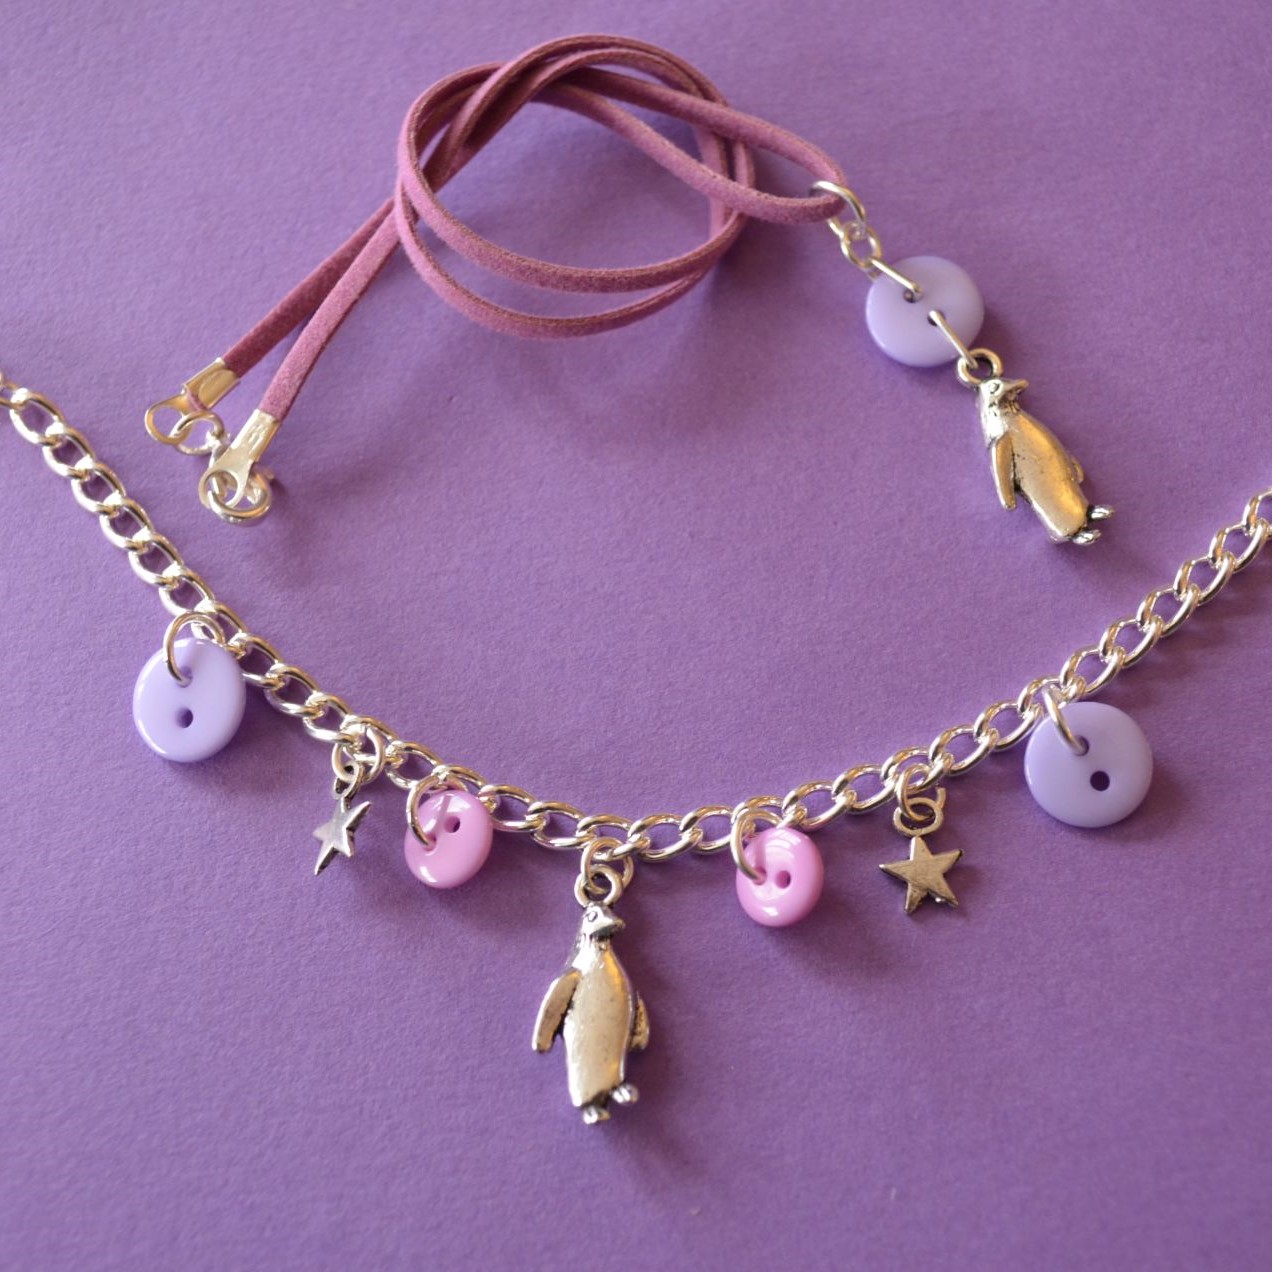 Penguin Child’s Button Charm Necklace